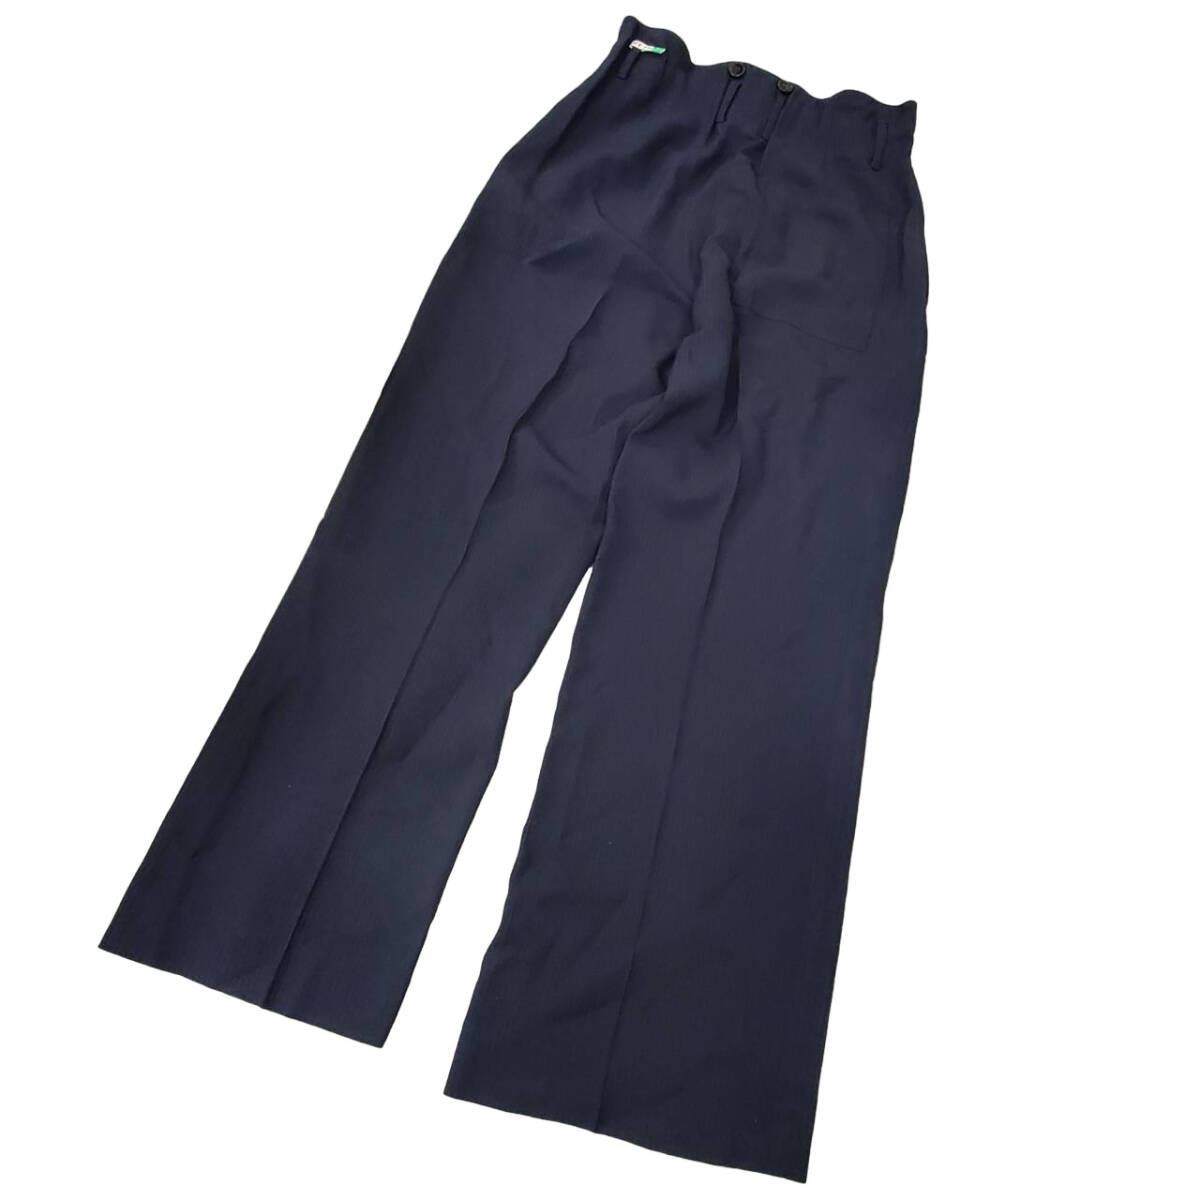 #68 3.1 Phillip Lim Philip * обод слаксы брюки размер 2 темно-синий темно-синий цвет специальный ремень имеется искусственный шелк 98% женский брюки 